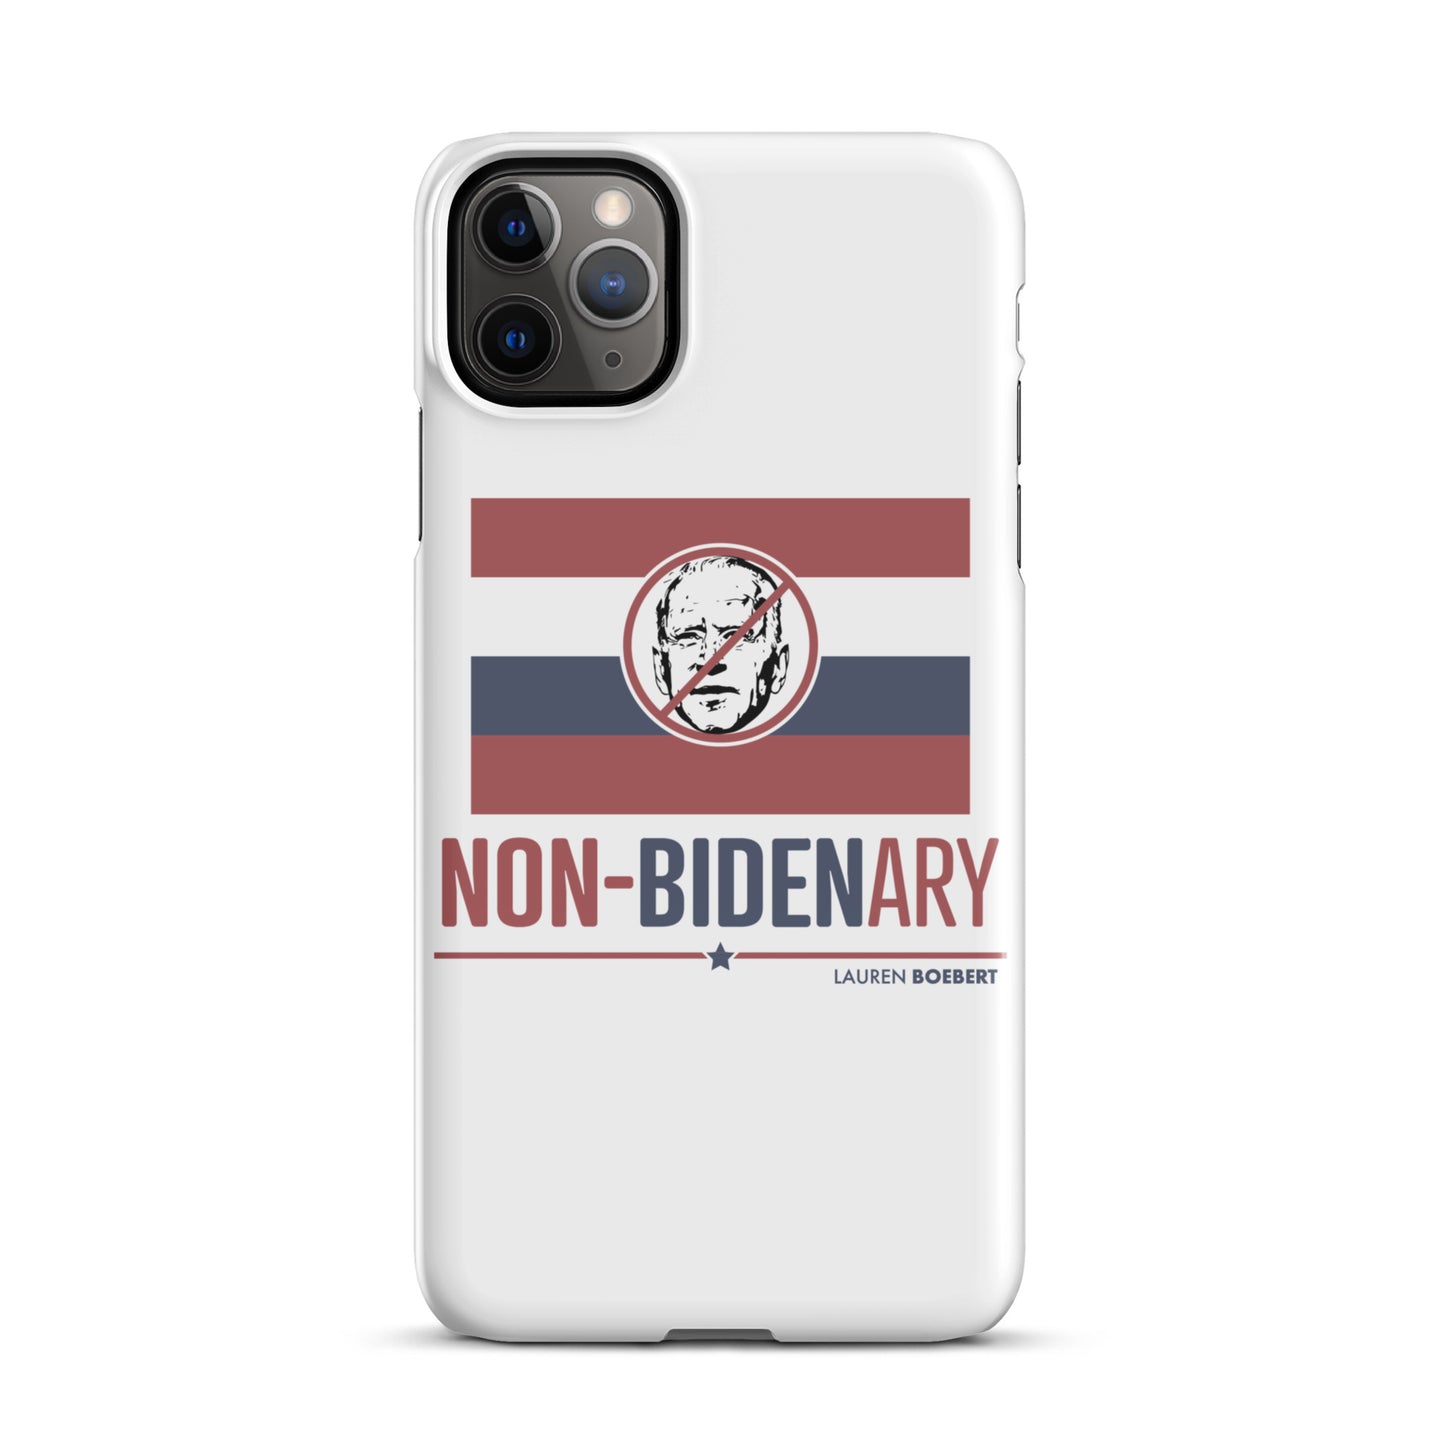 Non-Bidenary iPhone Case